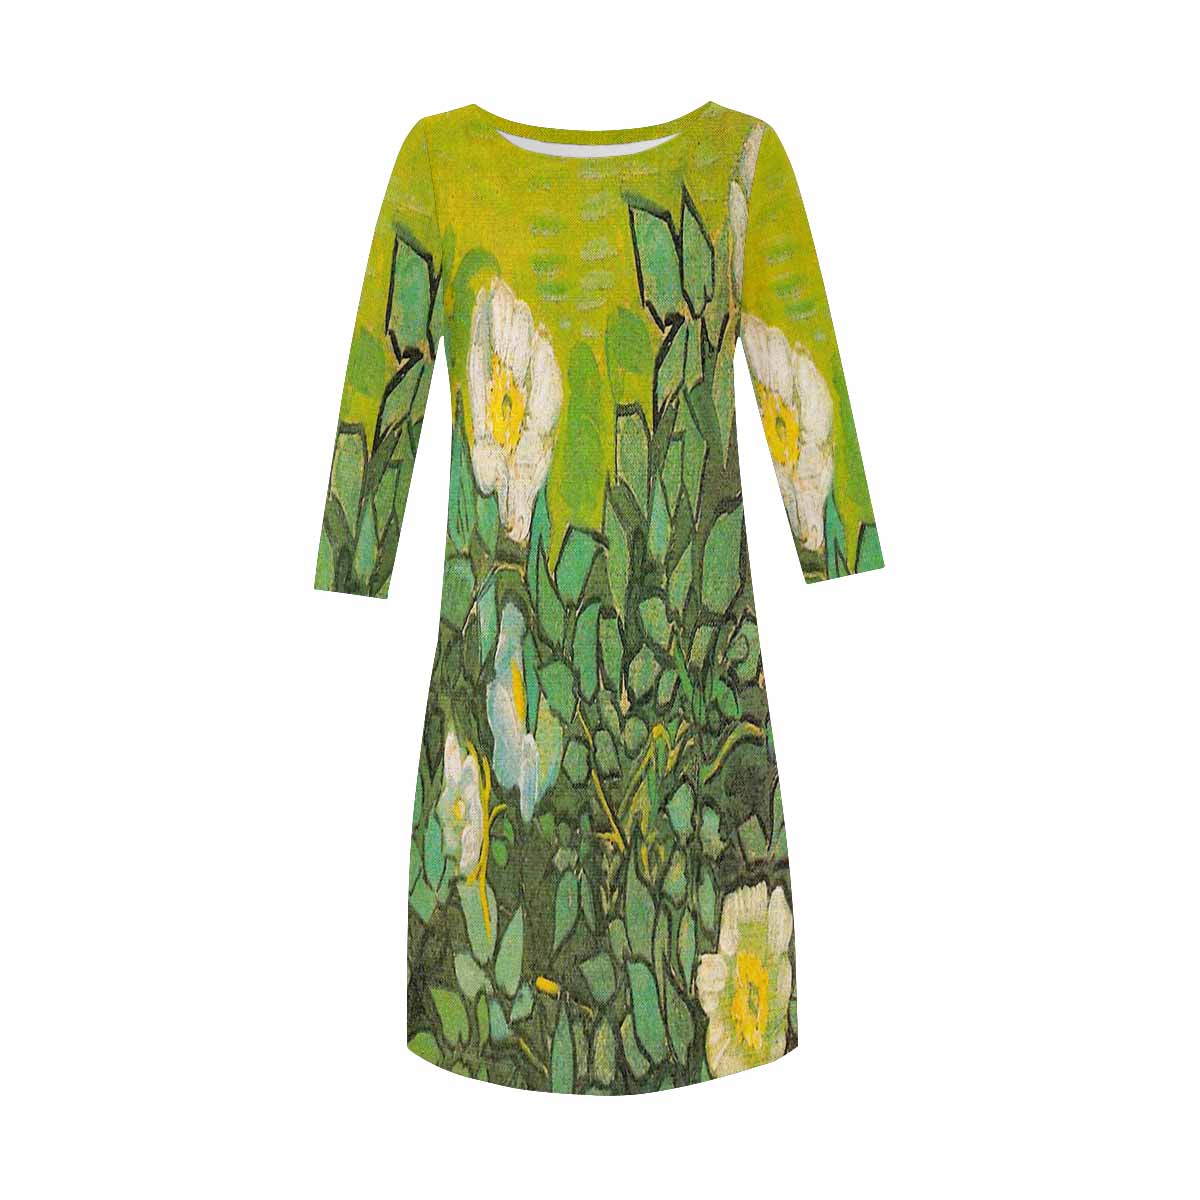 Vintage floral loose dress, XS to 3X plus size, model D29532 Design 01